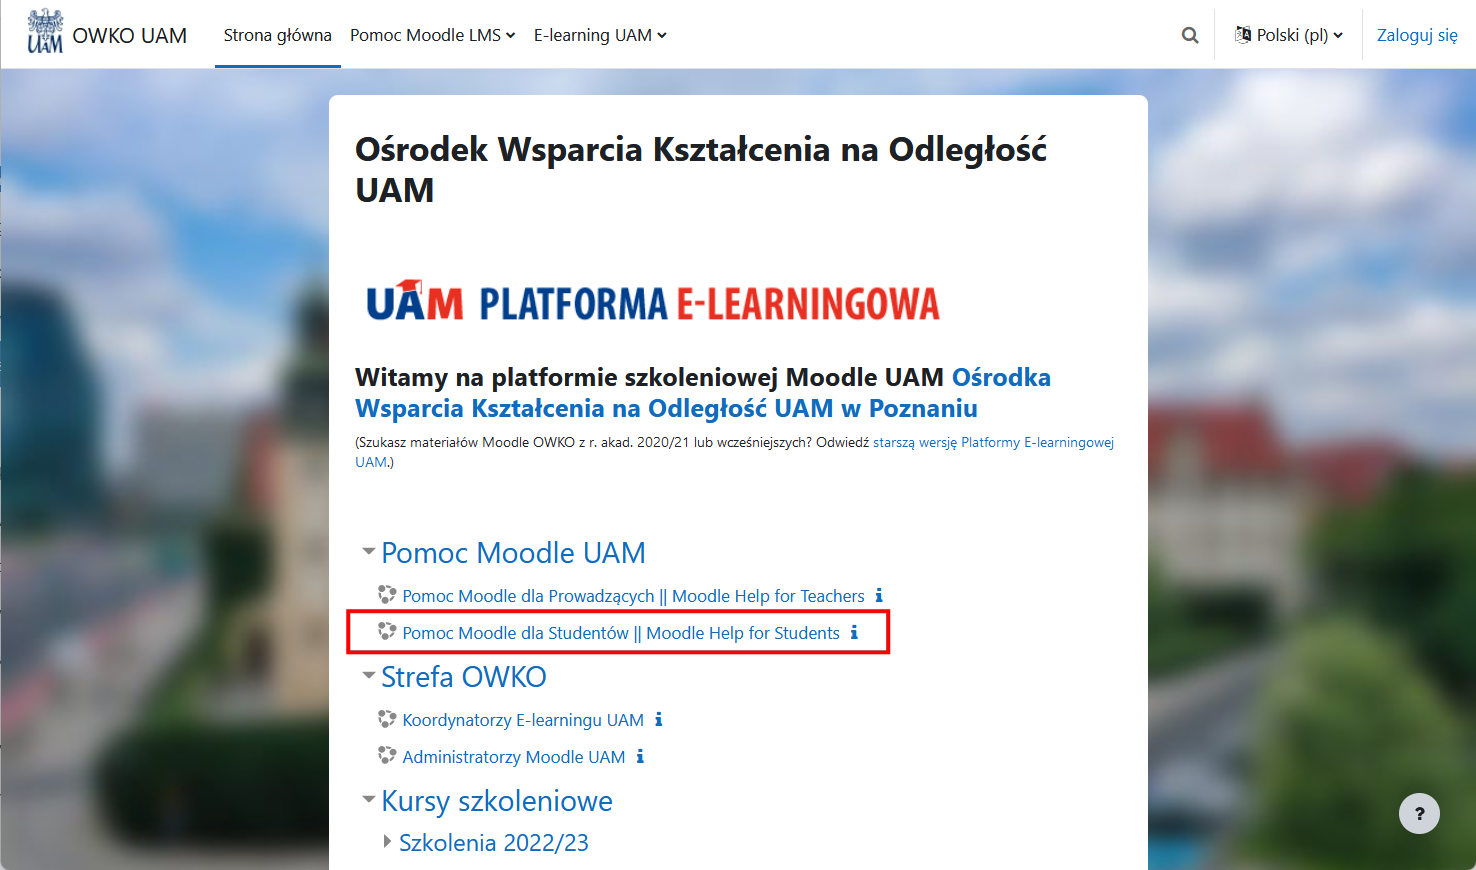 Platforma Moodle OWKO z widocznym kursem/stroną pomocy dla Studentów